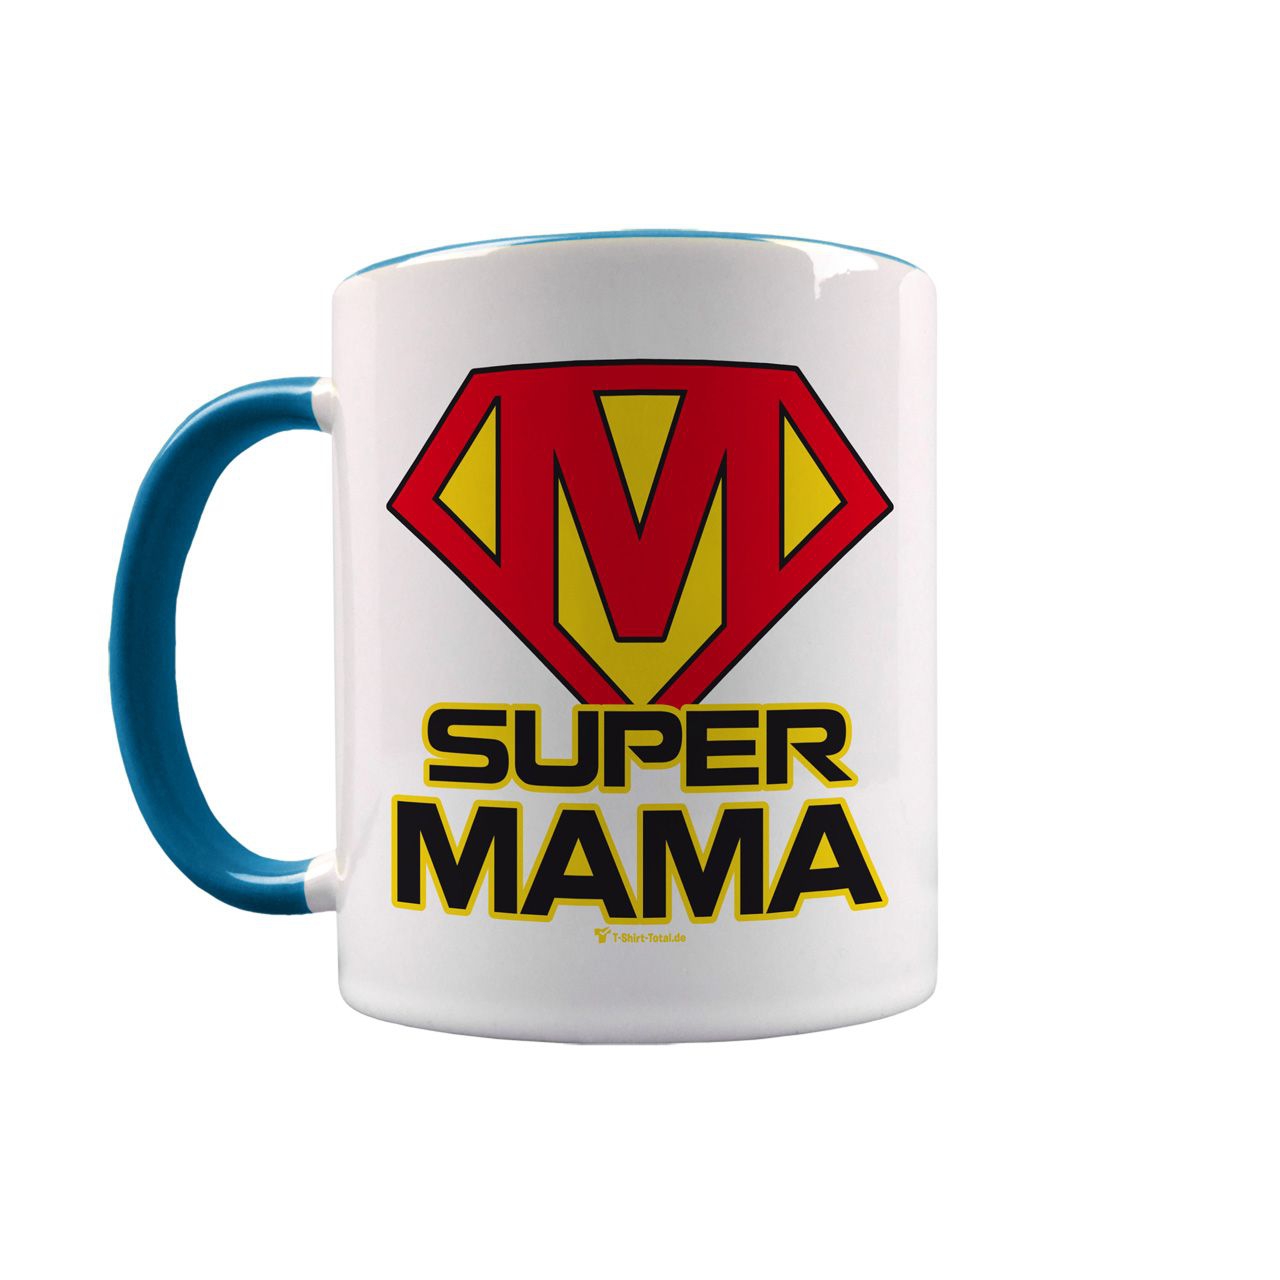 Super Mama Tasse türkis / weiß